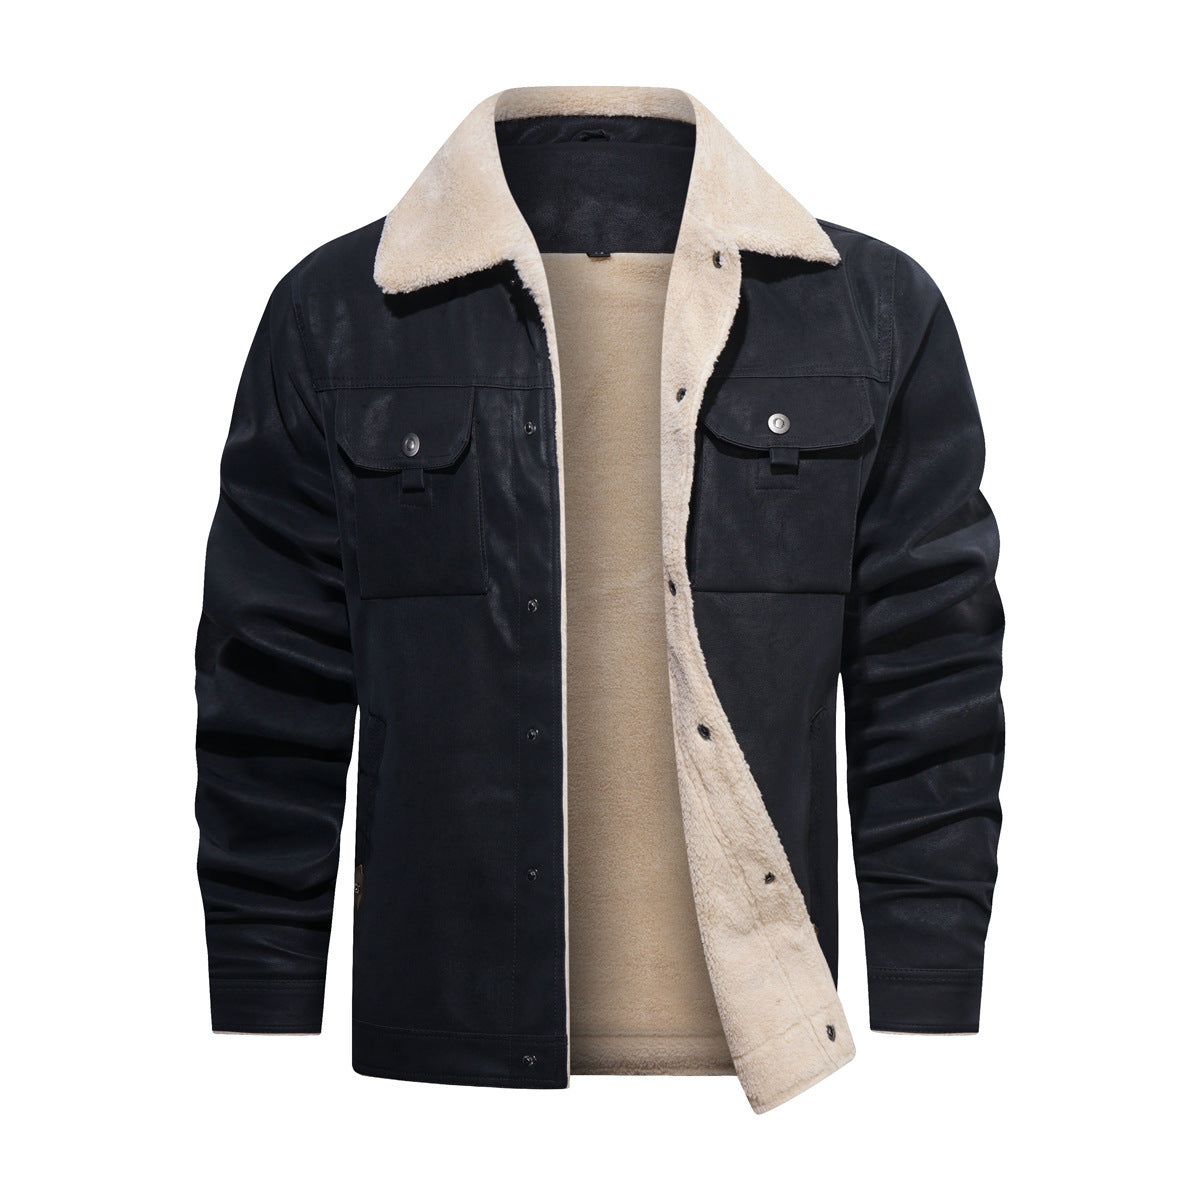 NS Shepherd Leather Jacket